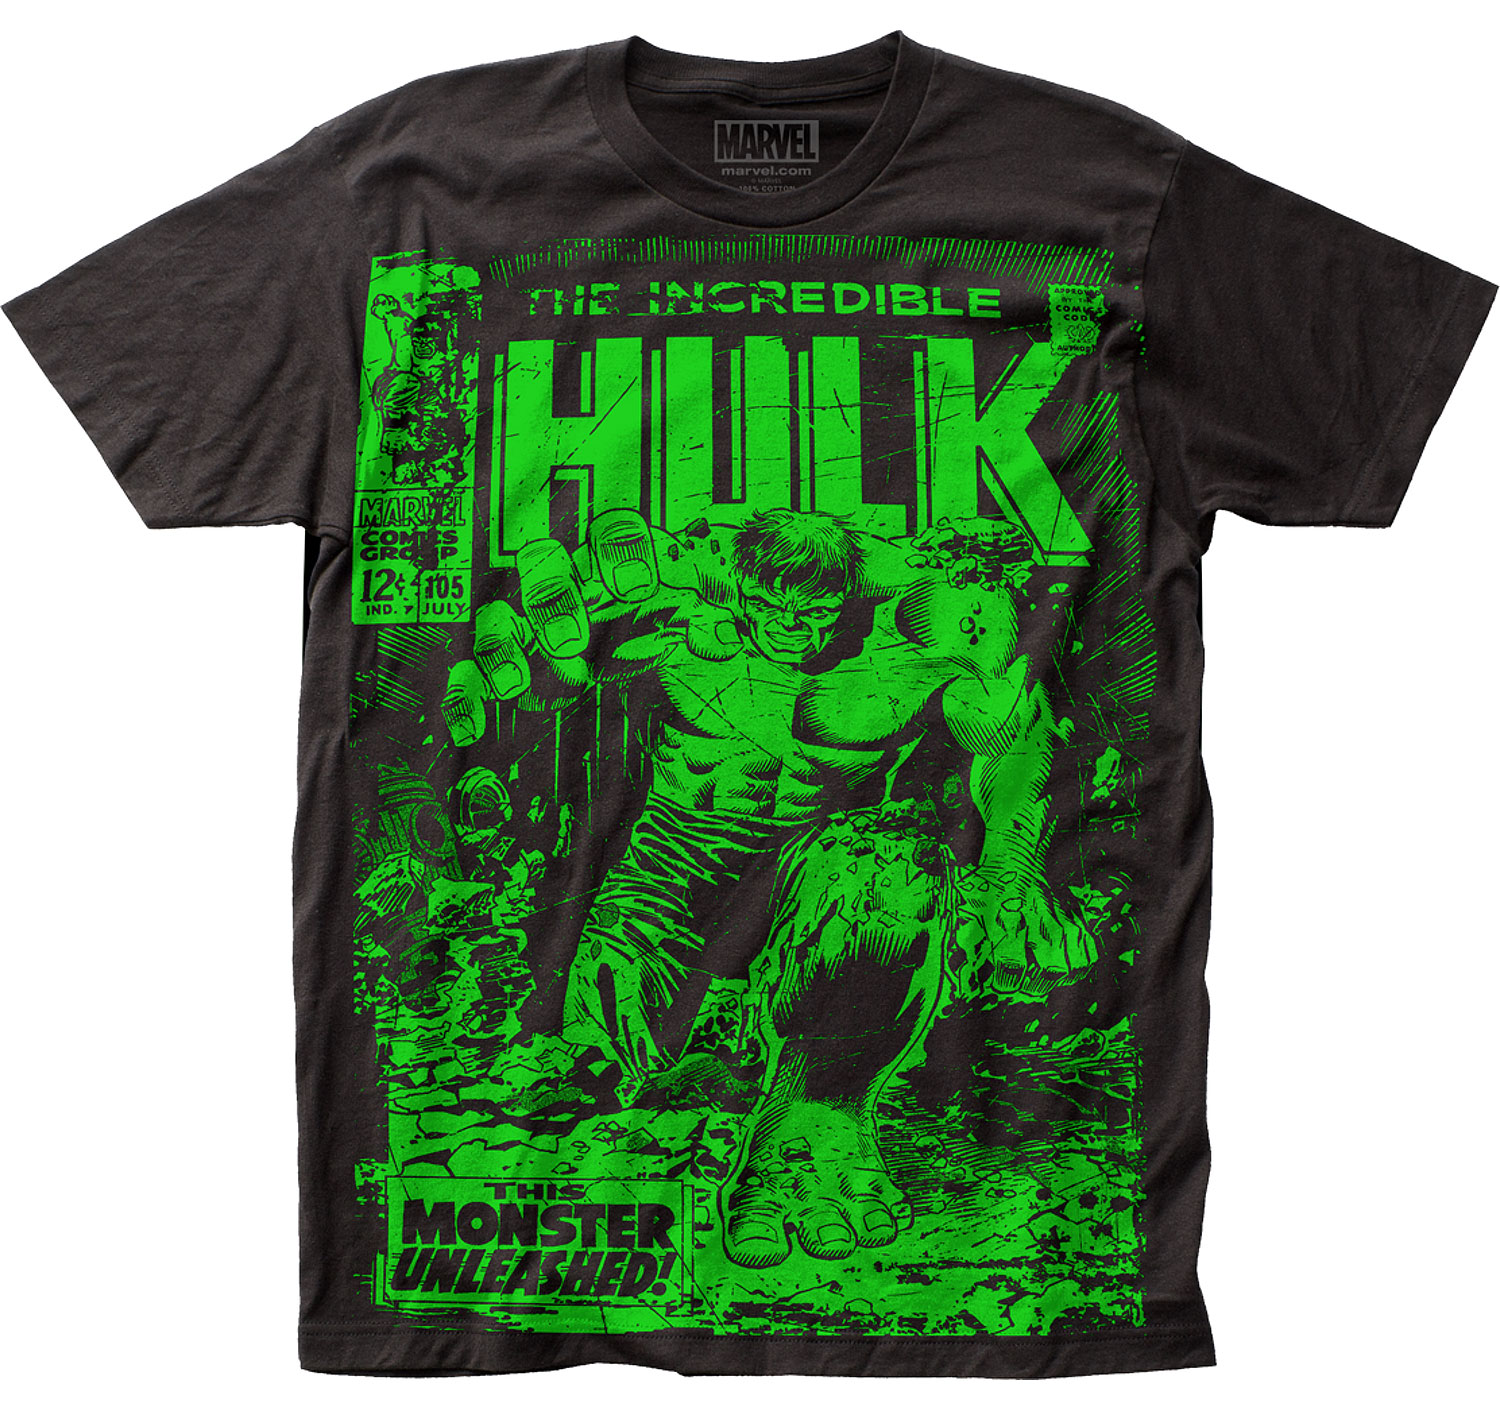 jordan 1 incredible hulk shirt